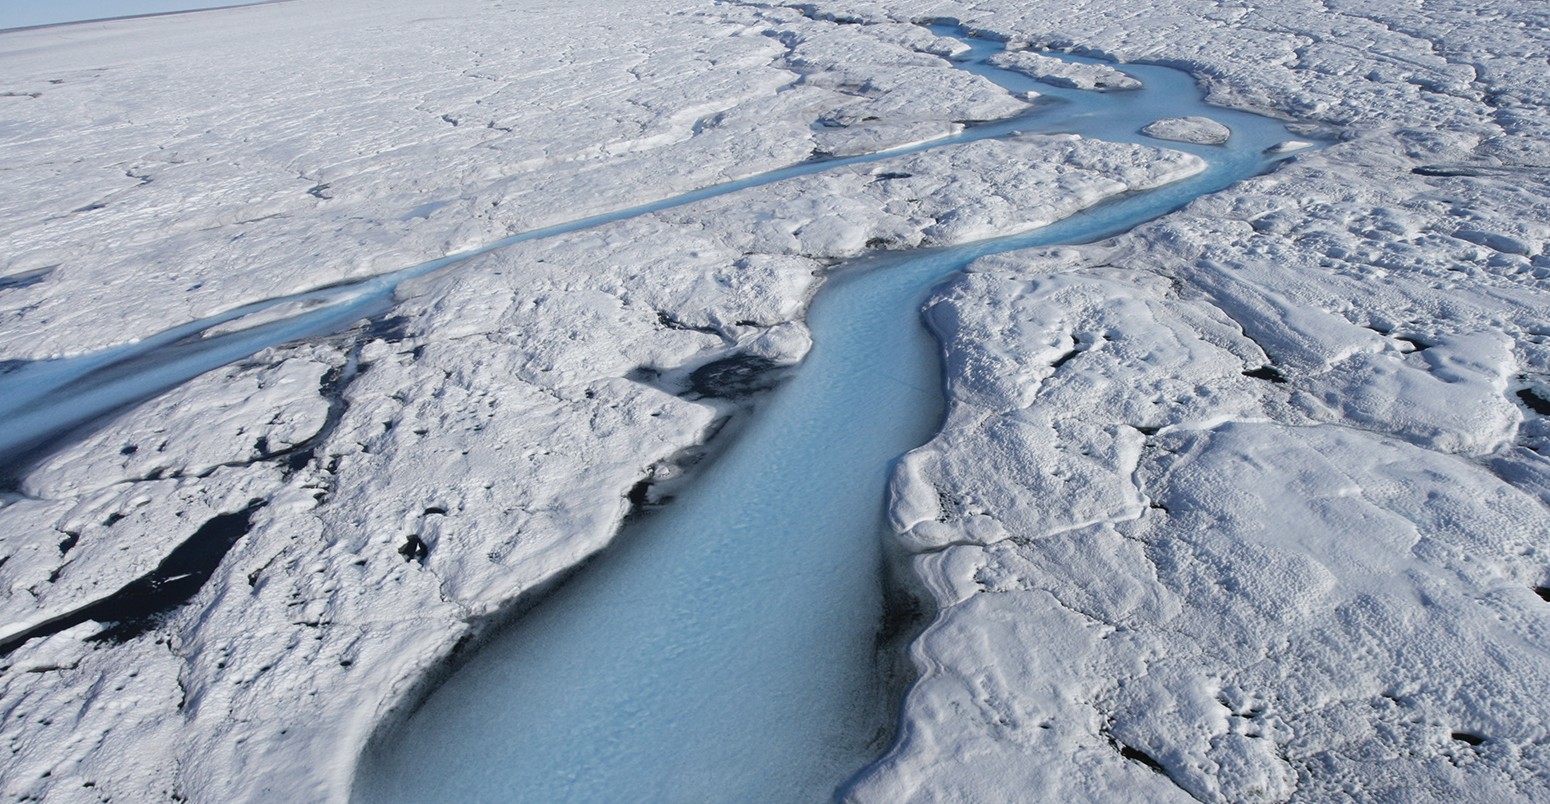 融冰形式rivers across the Sermeq Kujalleq Glacier